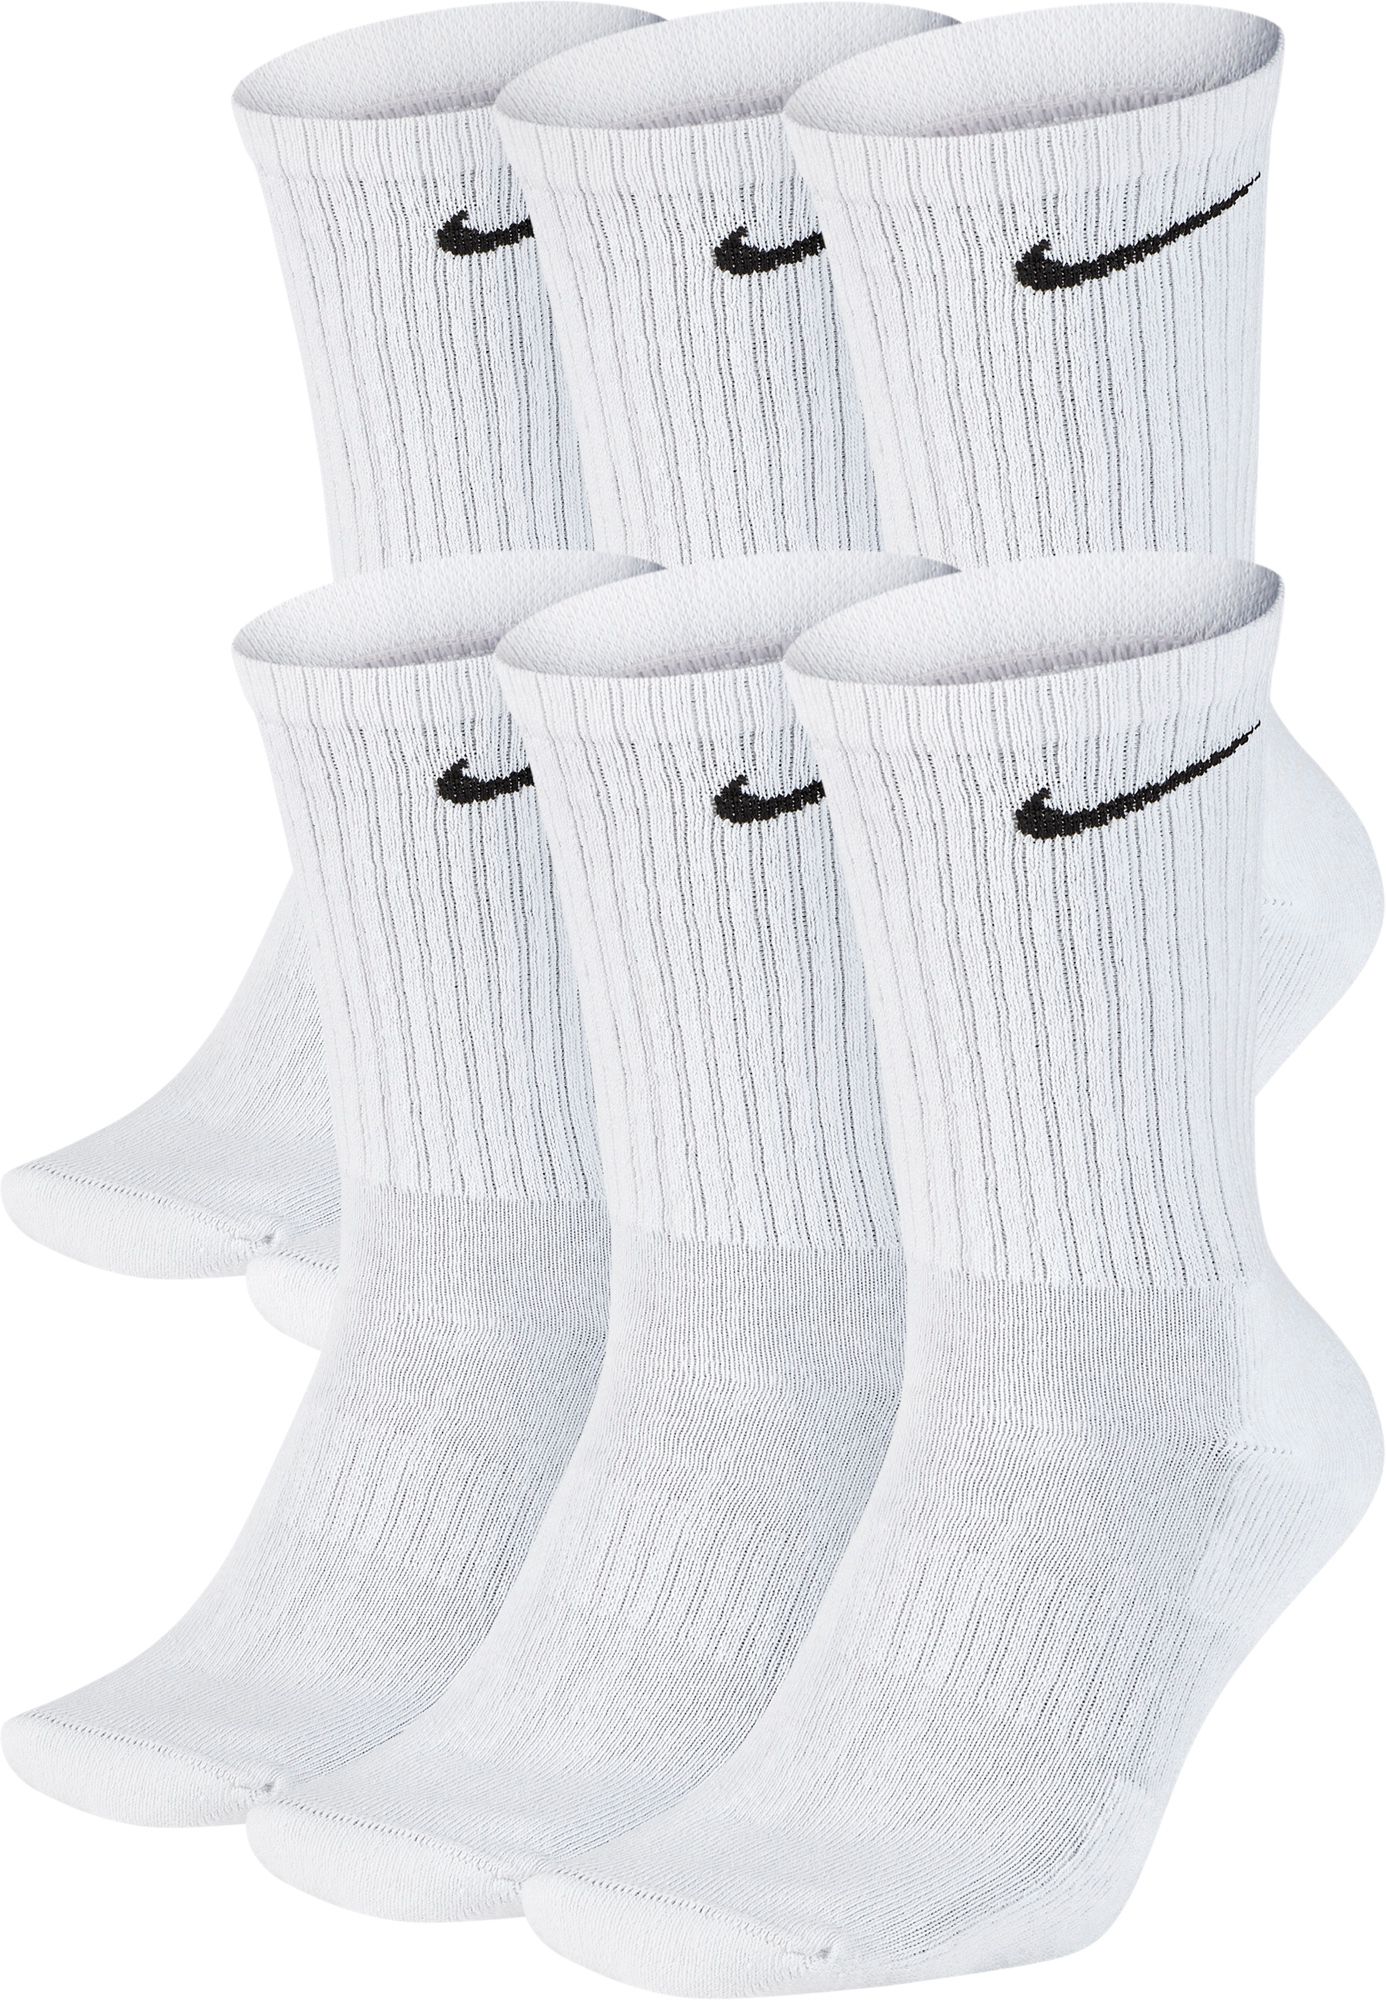 black and white nike socks womens